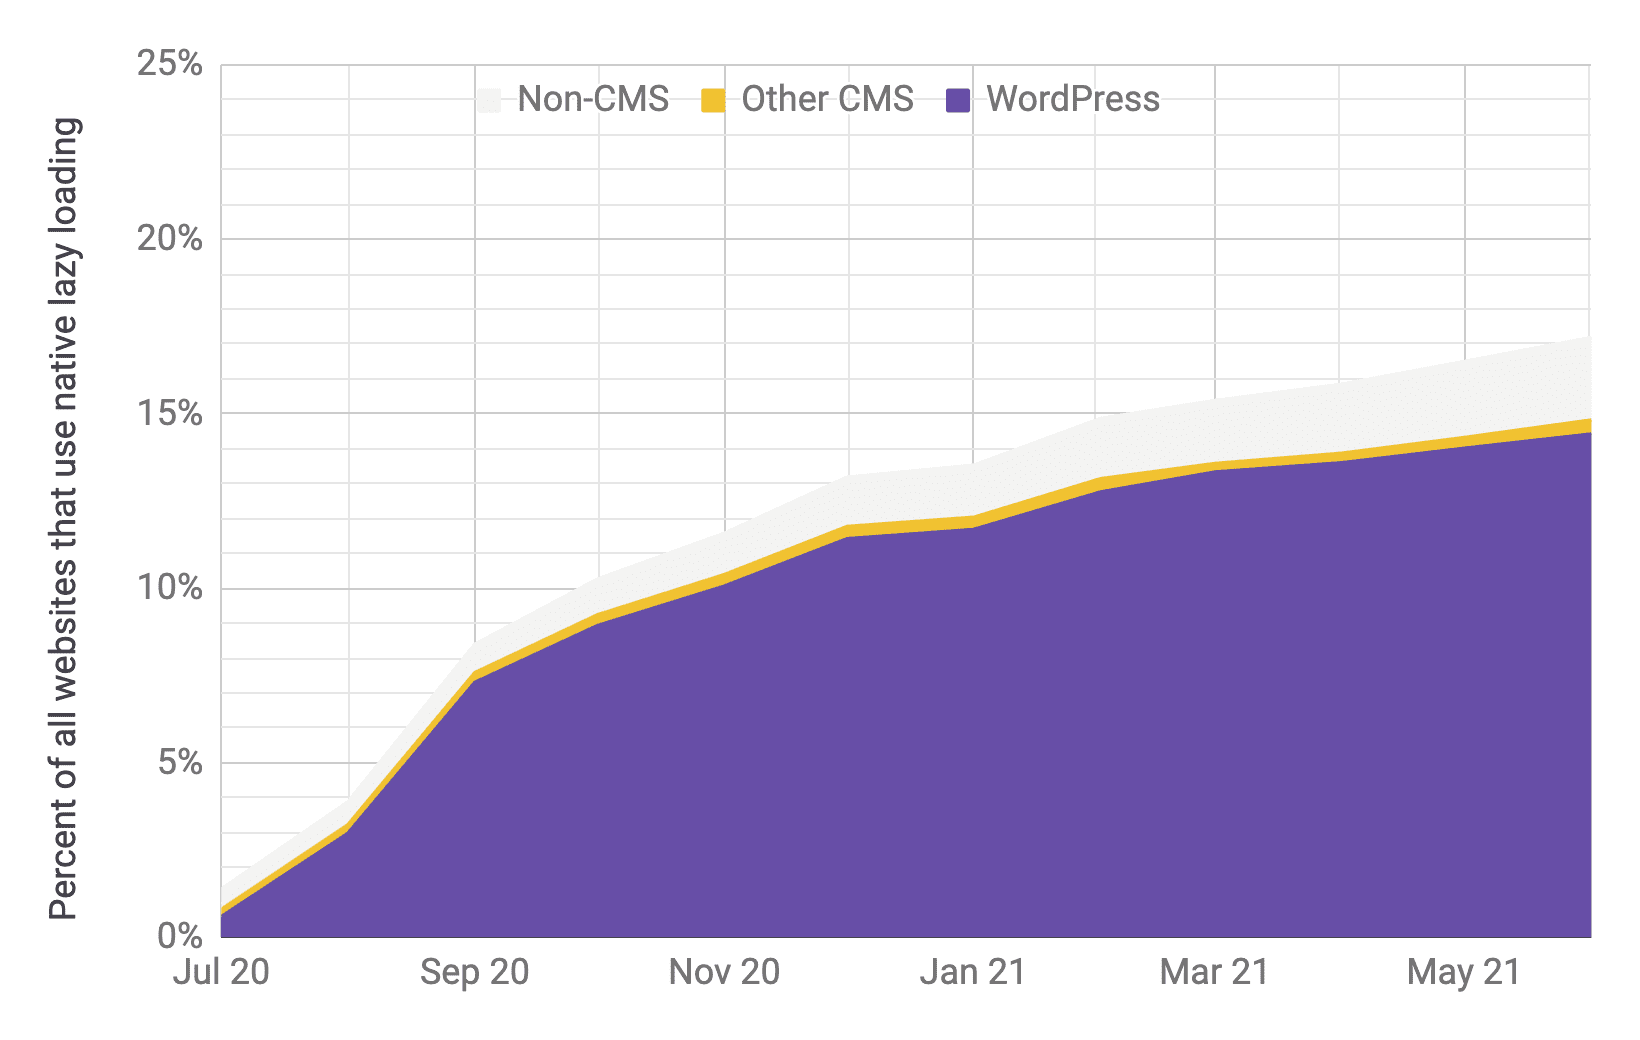 相較於其他 CMS 和非 CMS，WordPress 延遲載入採用率的時間序列圖表，呈現類似先前圖表的比例。根據研究顯示，從 2020 年 7 月到 2021 年 6 月，總採用率從 1% 快速增加至 17%。